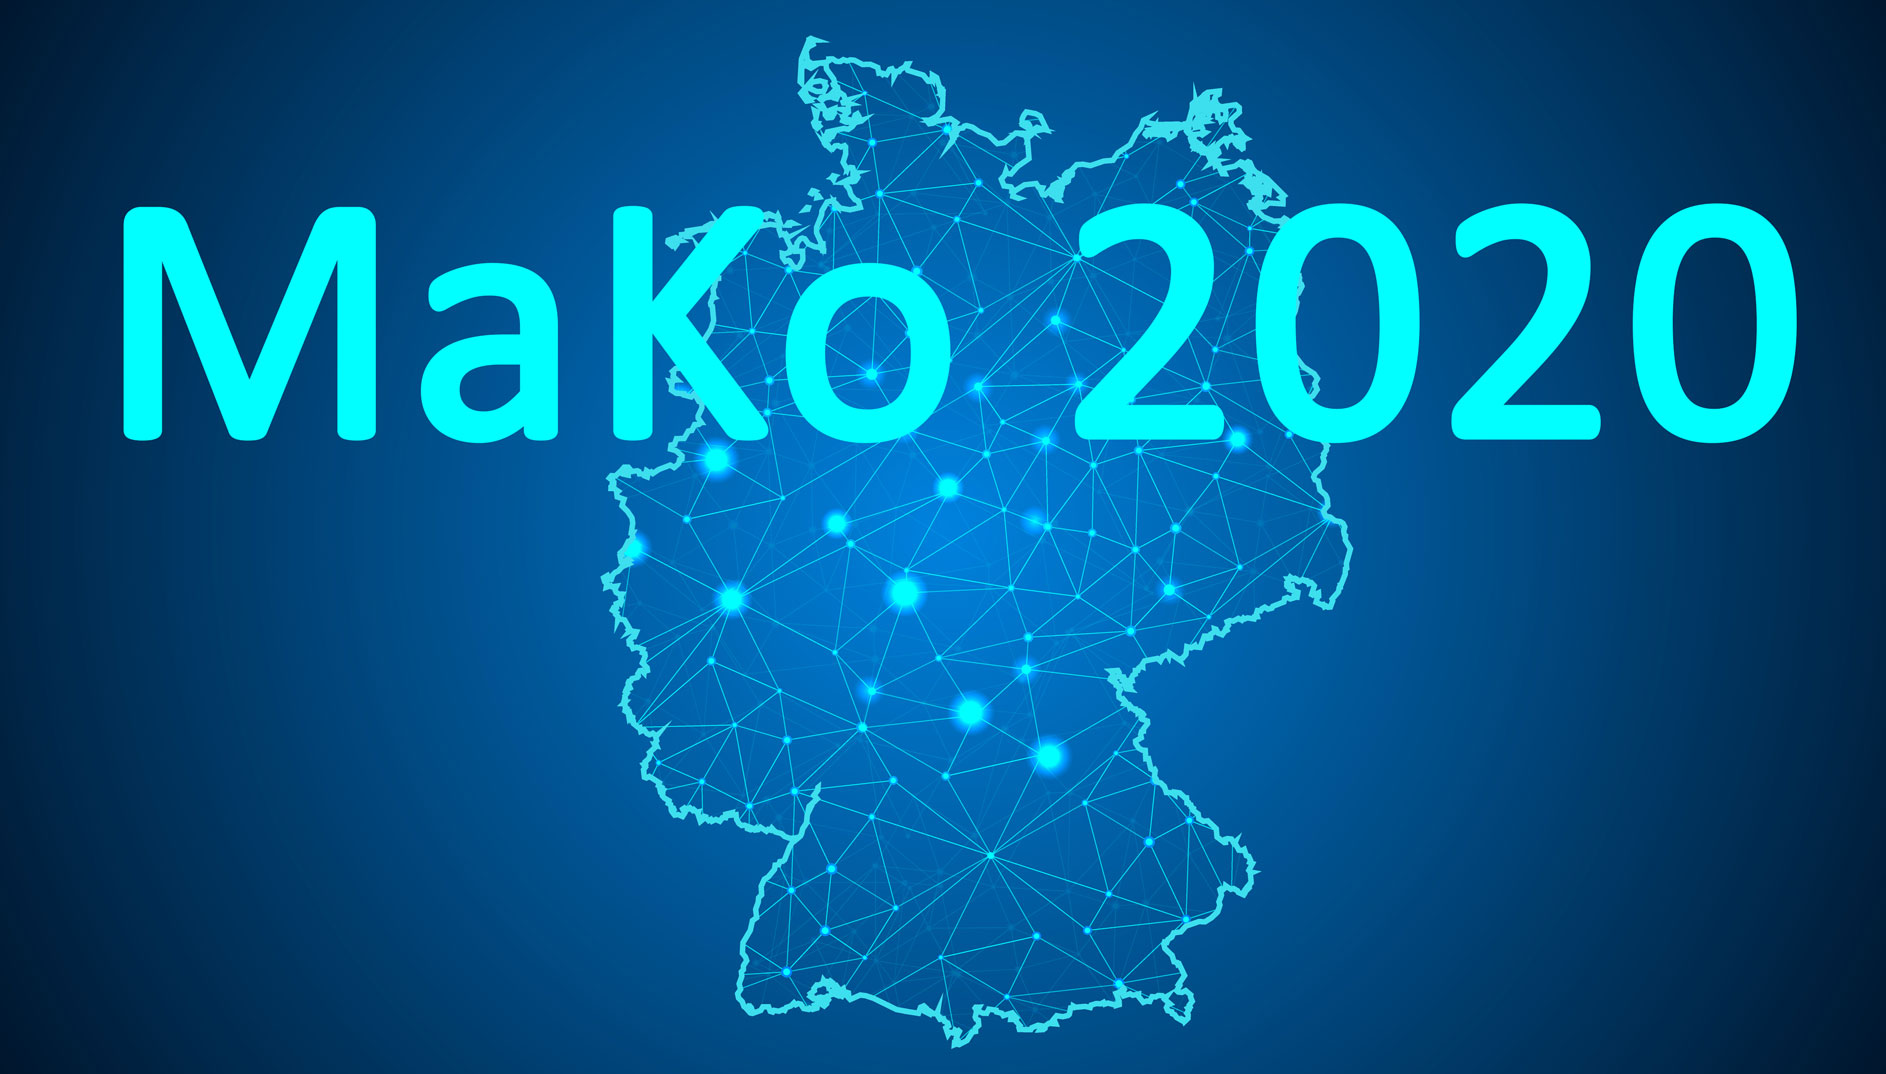 MaKo2020